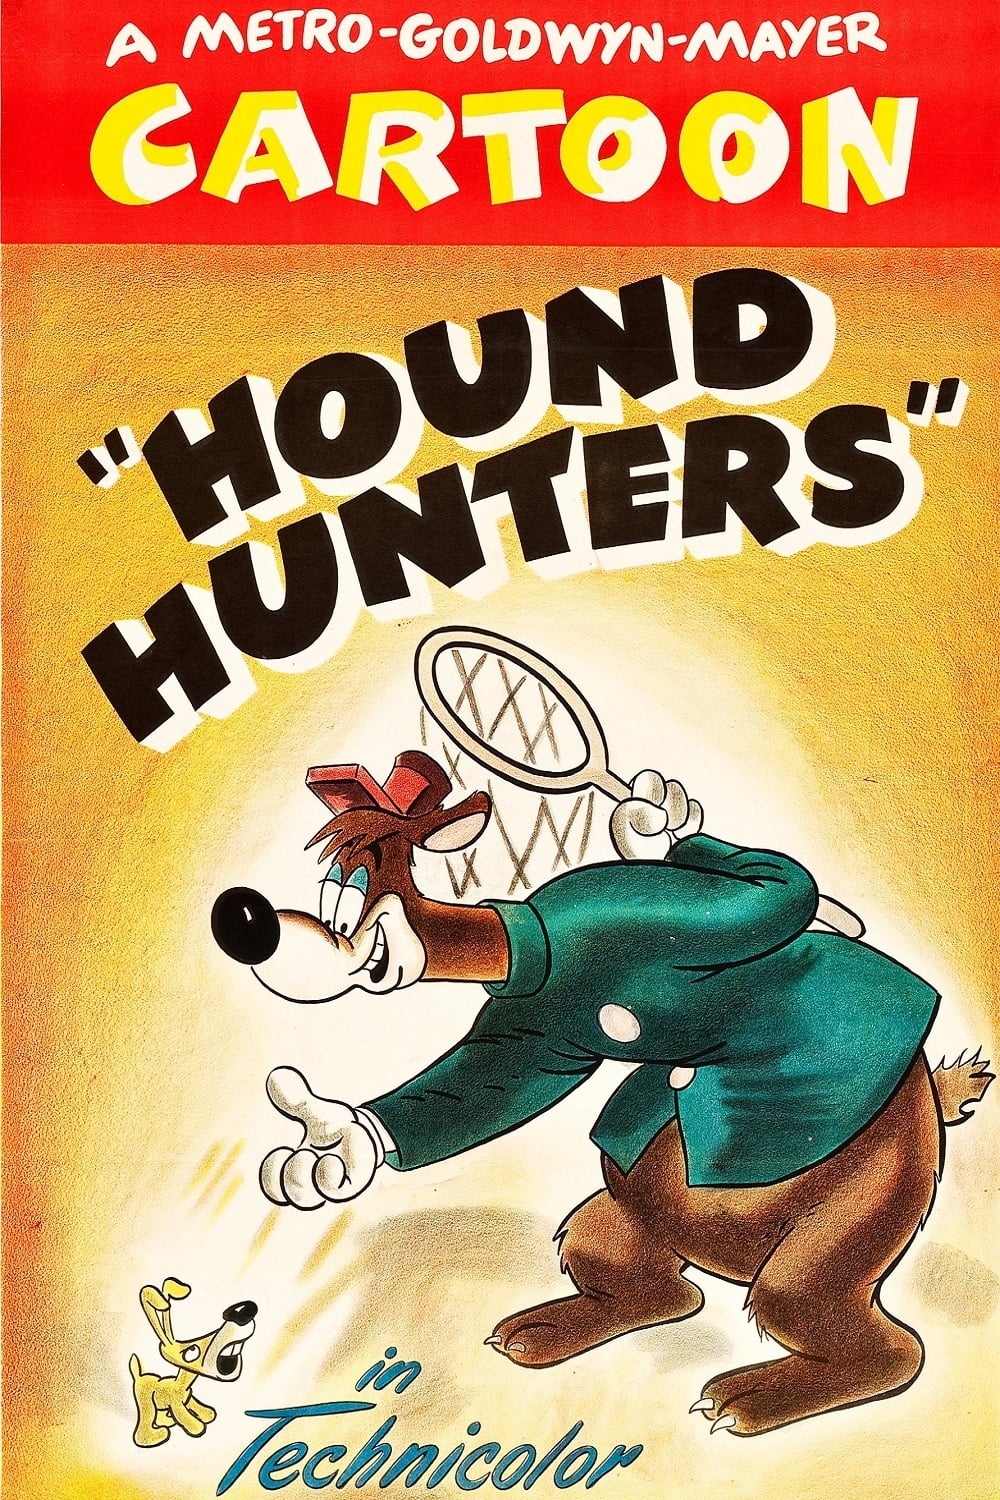 Hound Hunters (1947)